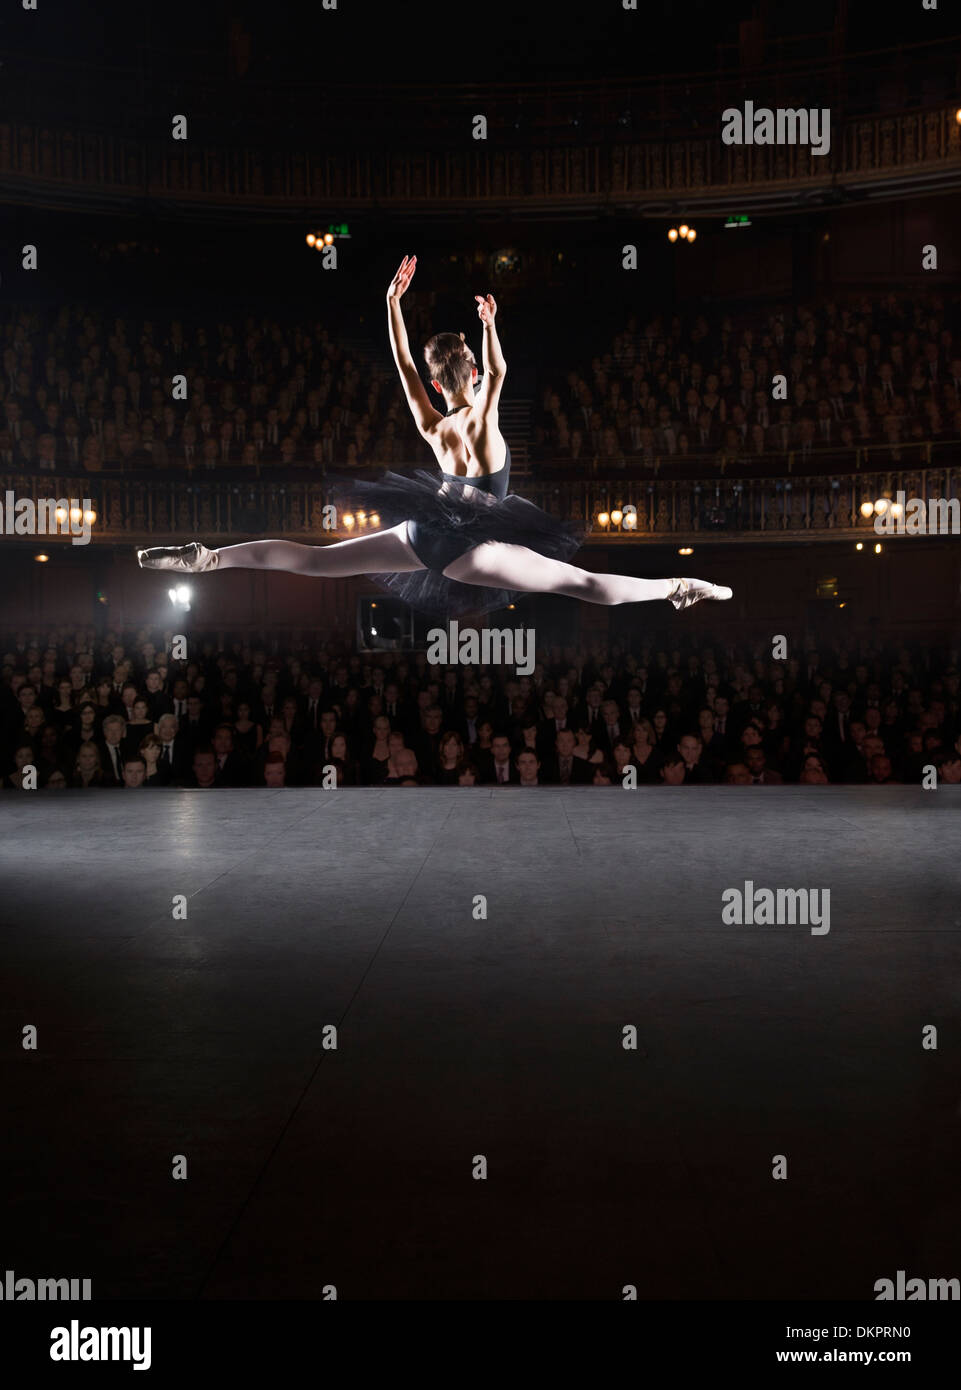 Ballerina mid-air on theater stage Stock Photo